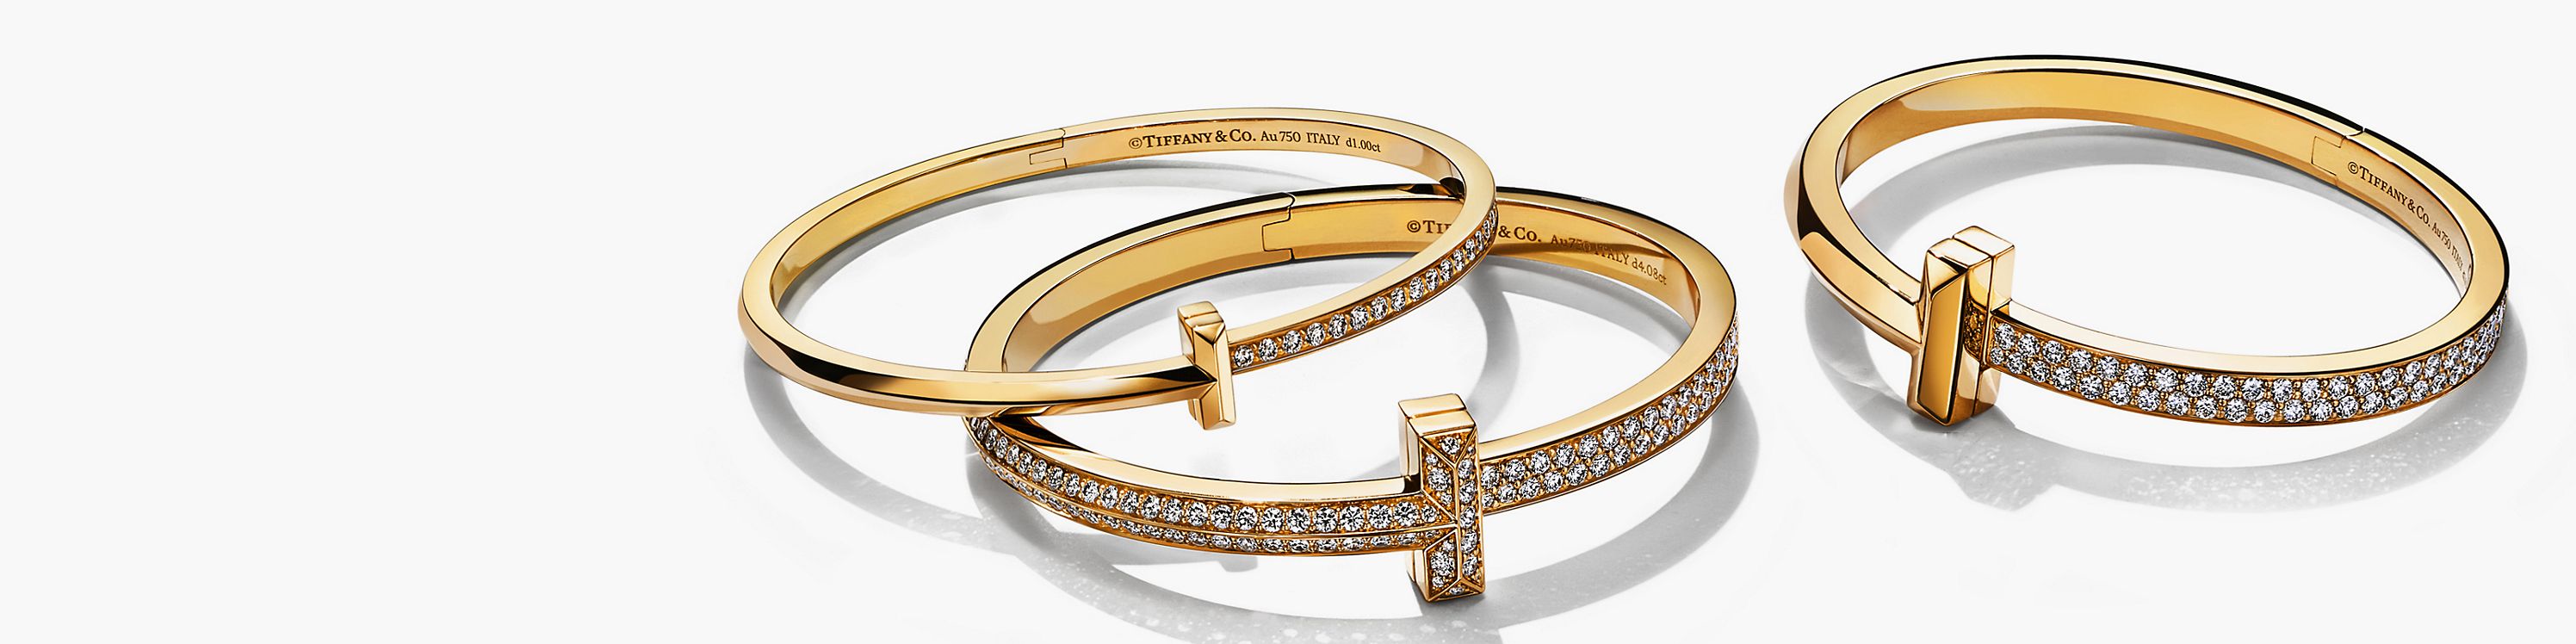 Les bijoux Tiffany & Co. les plus populaires